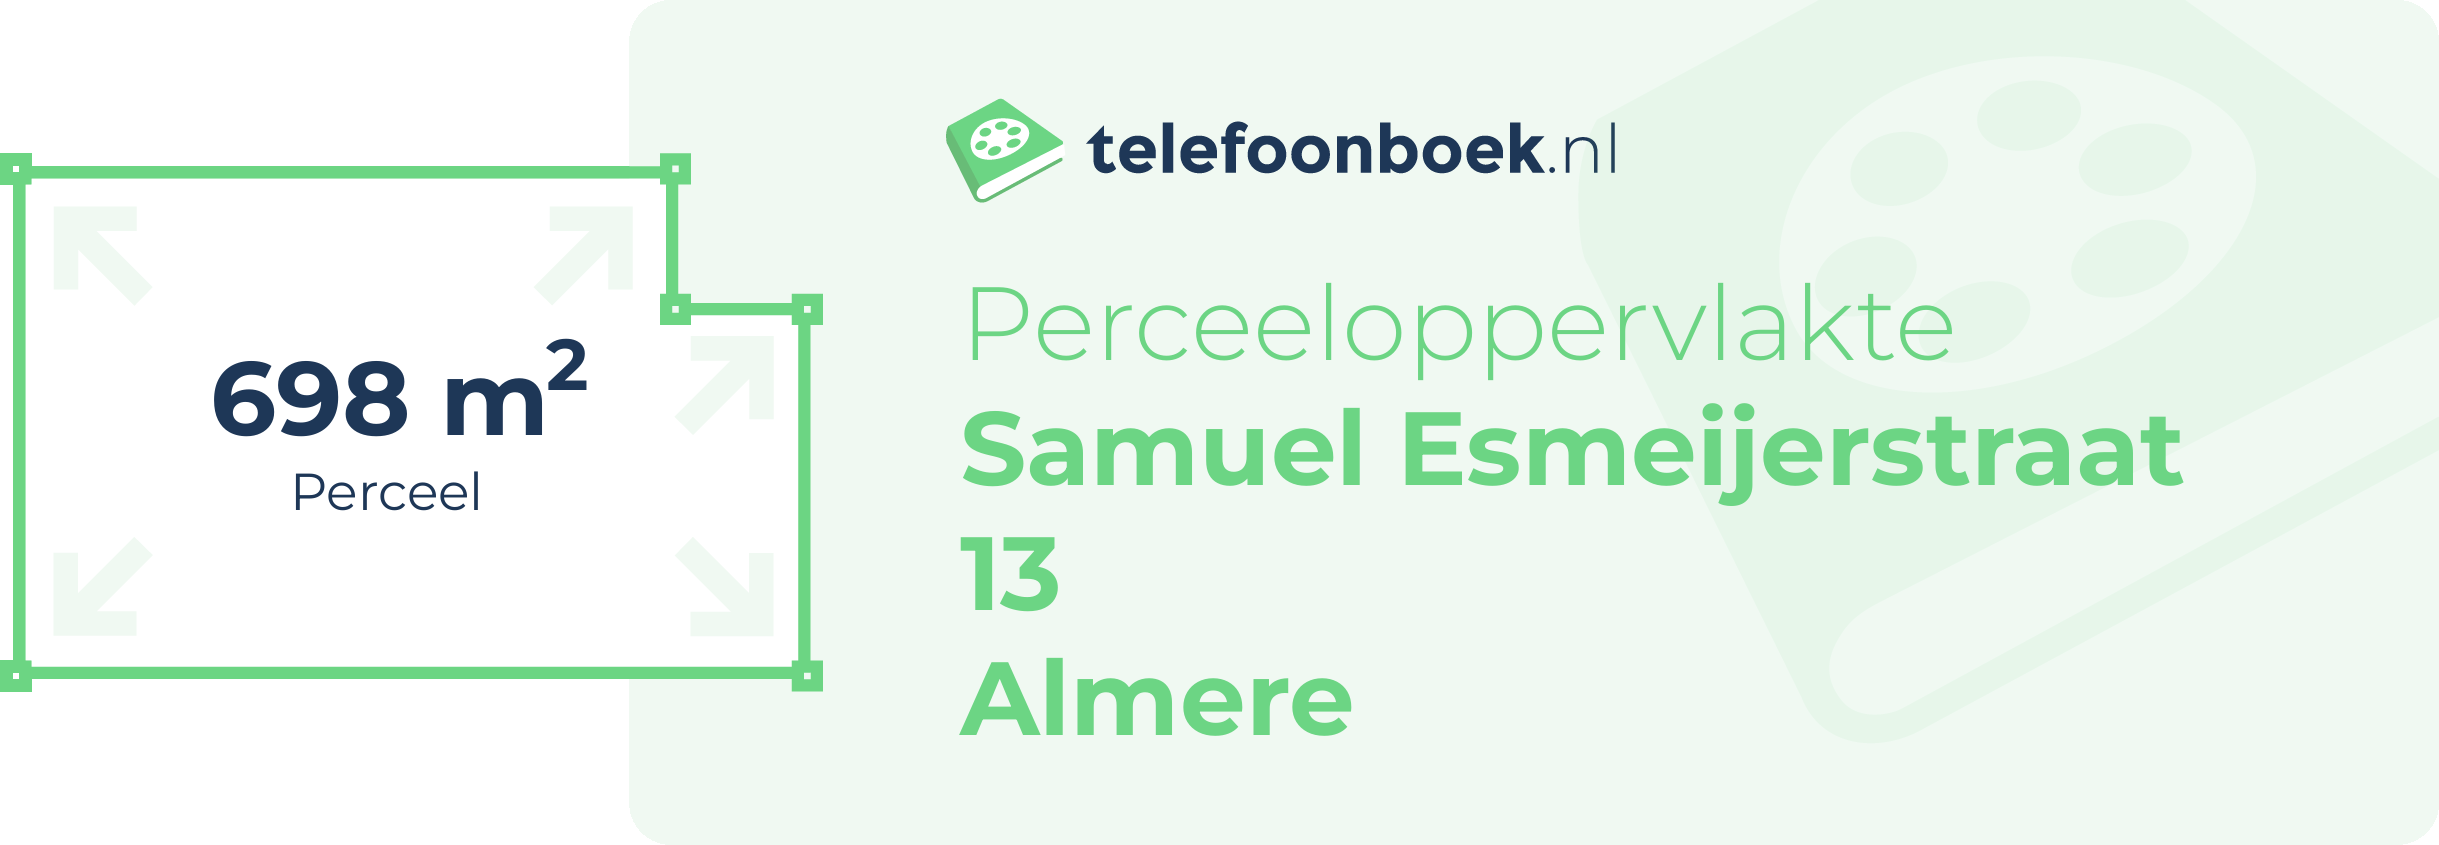 Perceeloppervlakte Samuel Esmeijerstraat 13 Almere